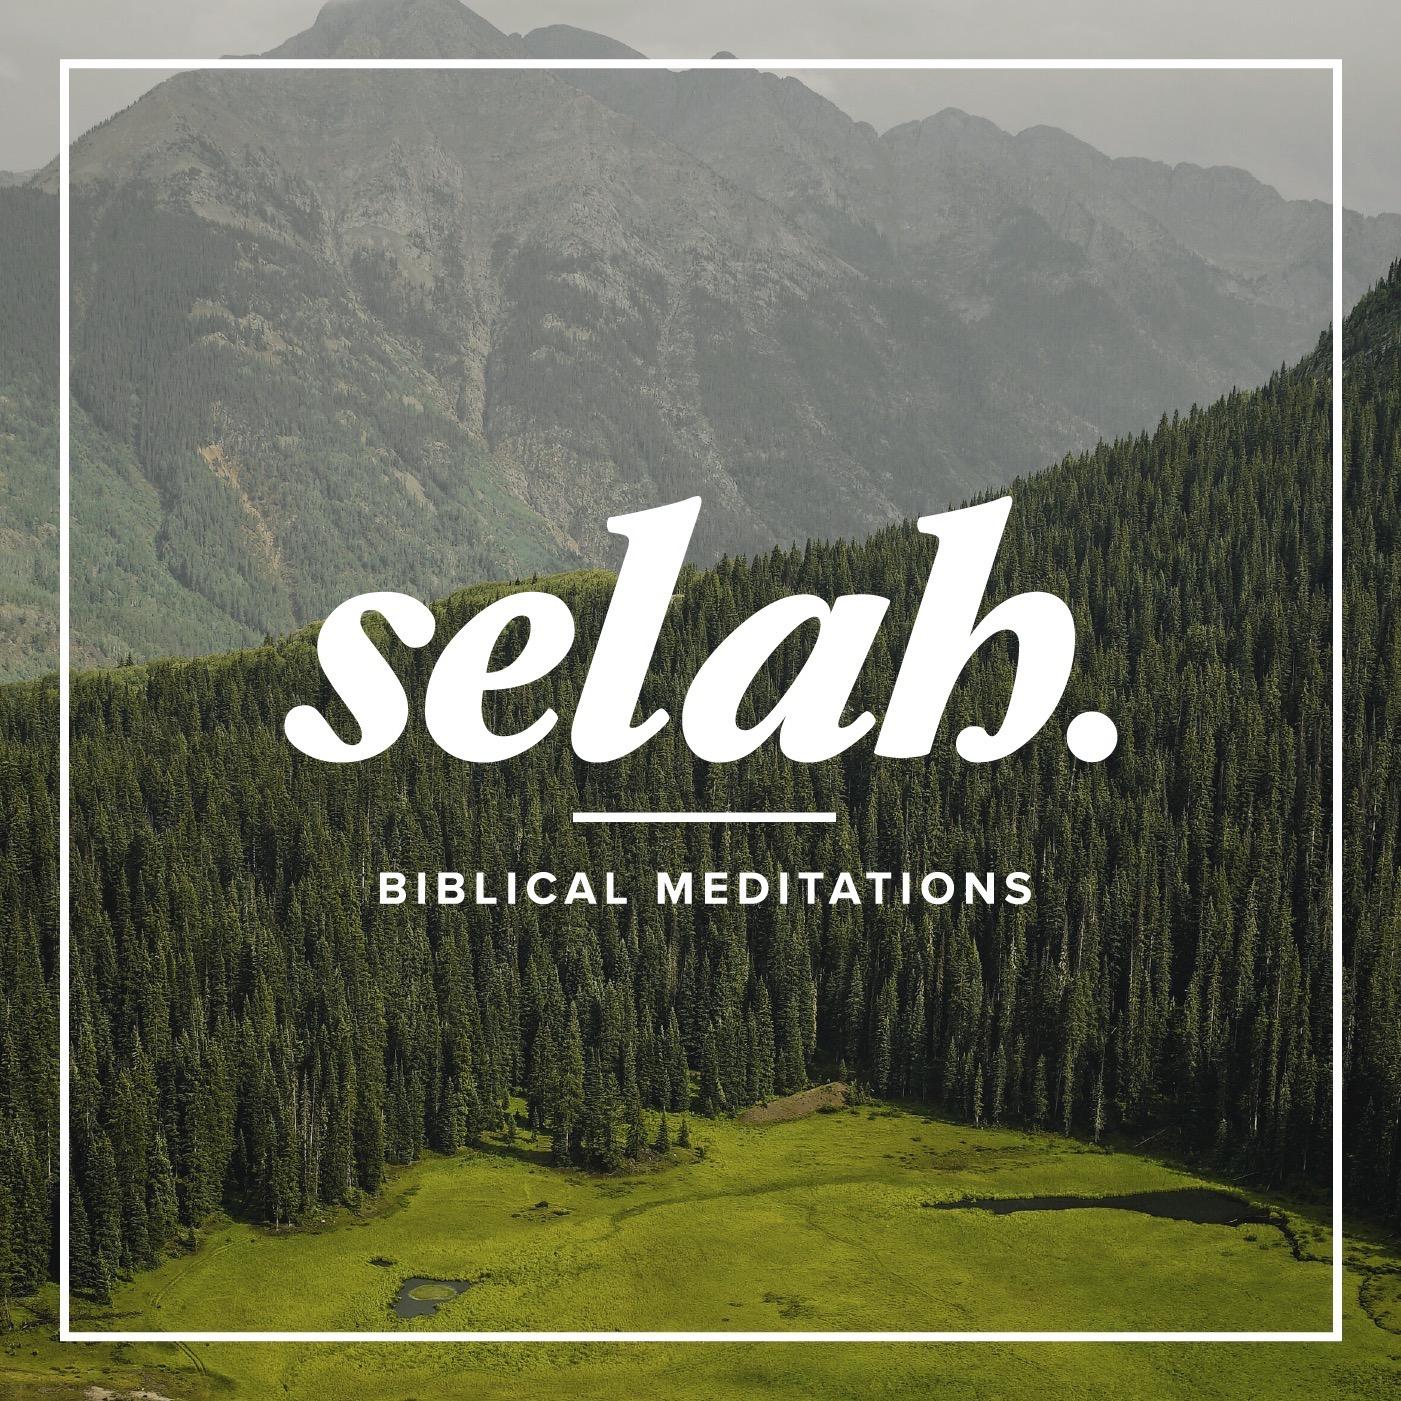 Selah - Biblical Meditations